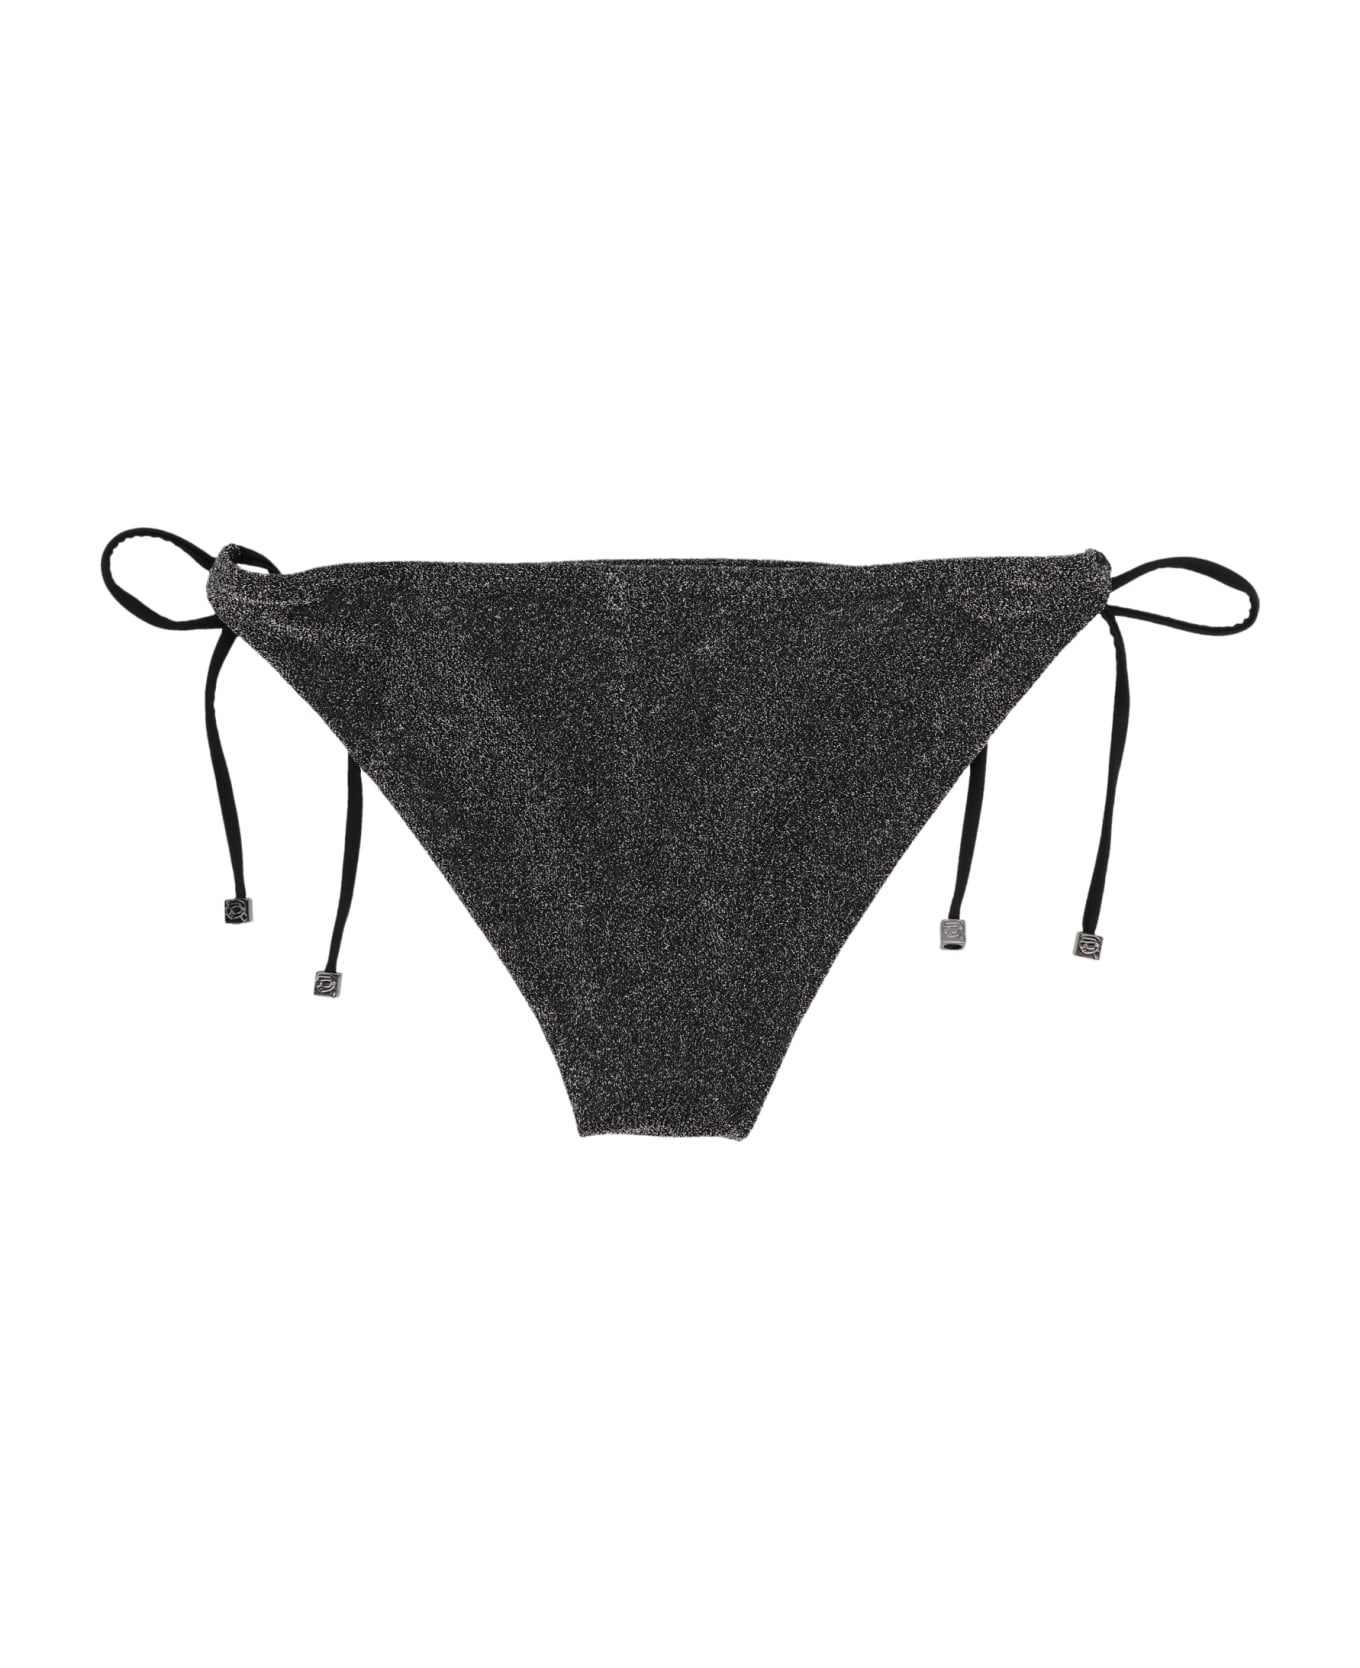 Karl Lagerfeld 'ikonik 2.0' Bikini Bottom - Black   水着